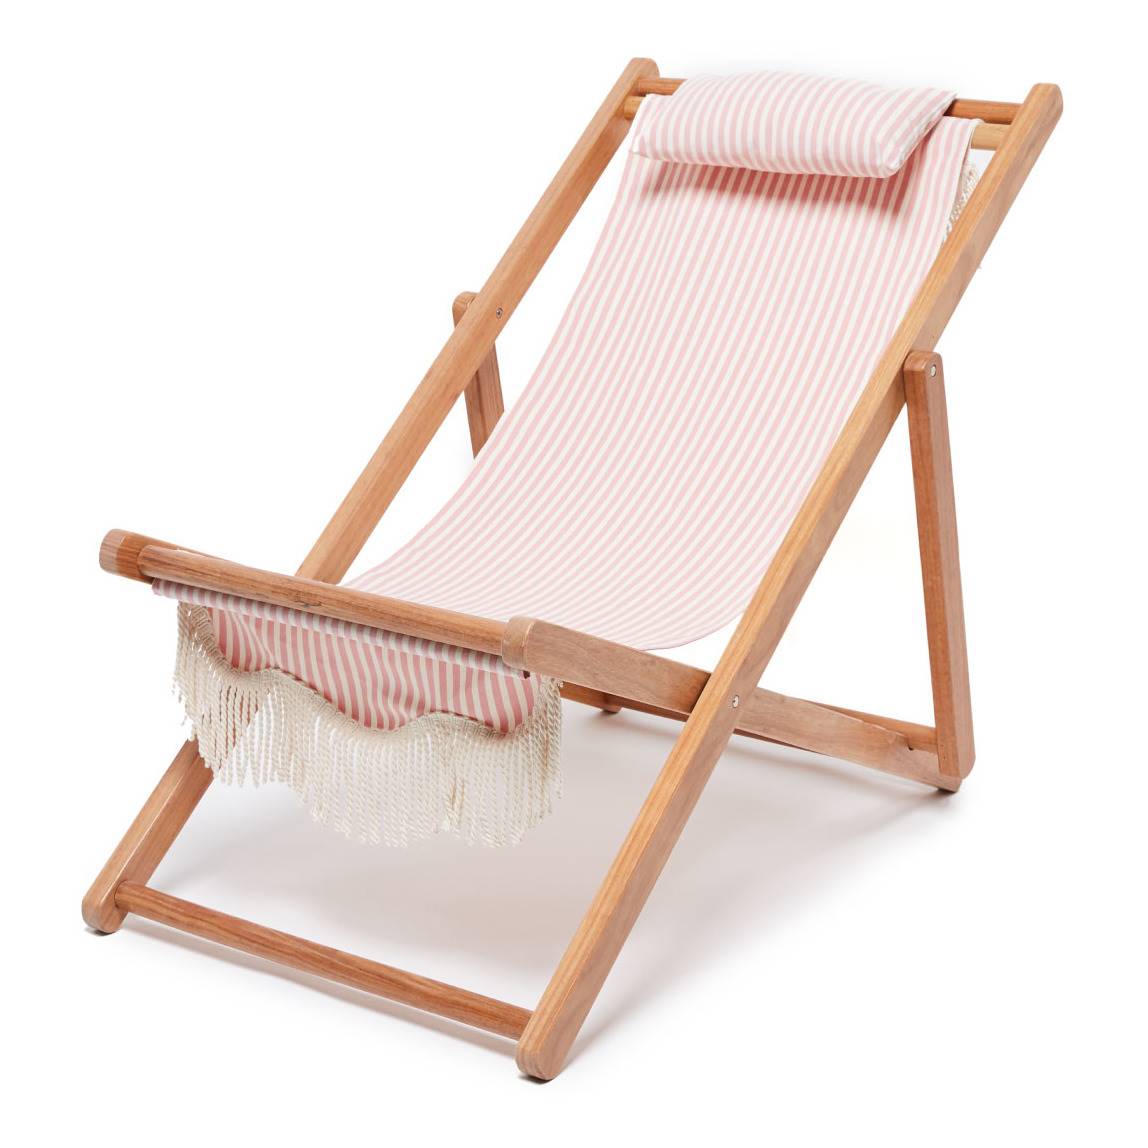 Hamaca plegable de estilo boho con el asiento de tela rosa a rayas y flecos de Smallable